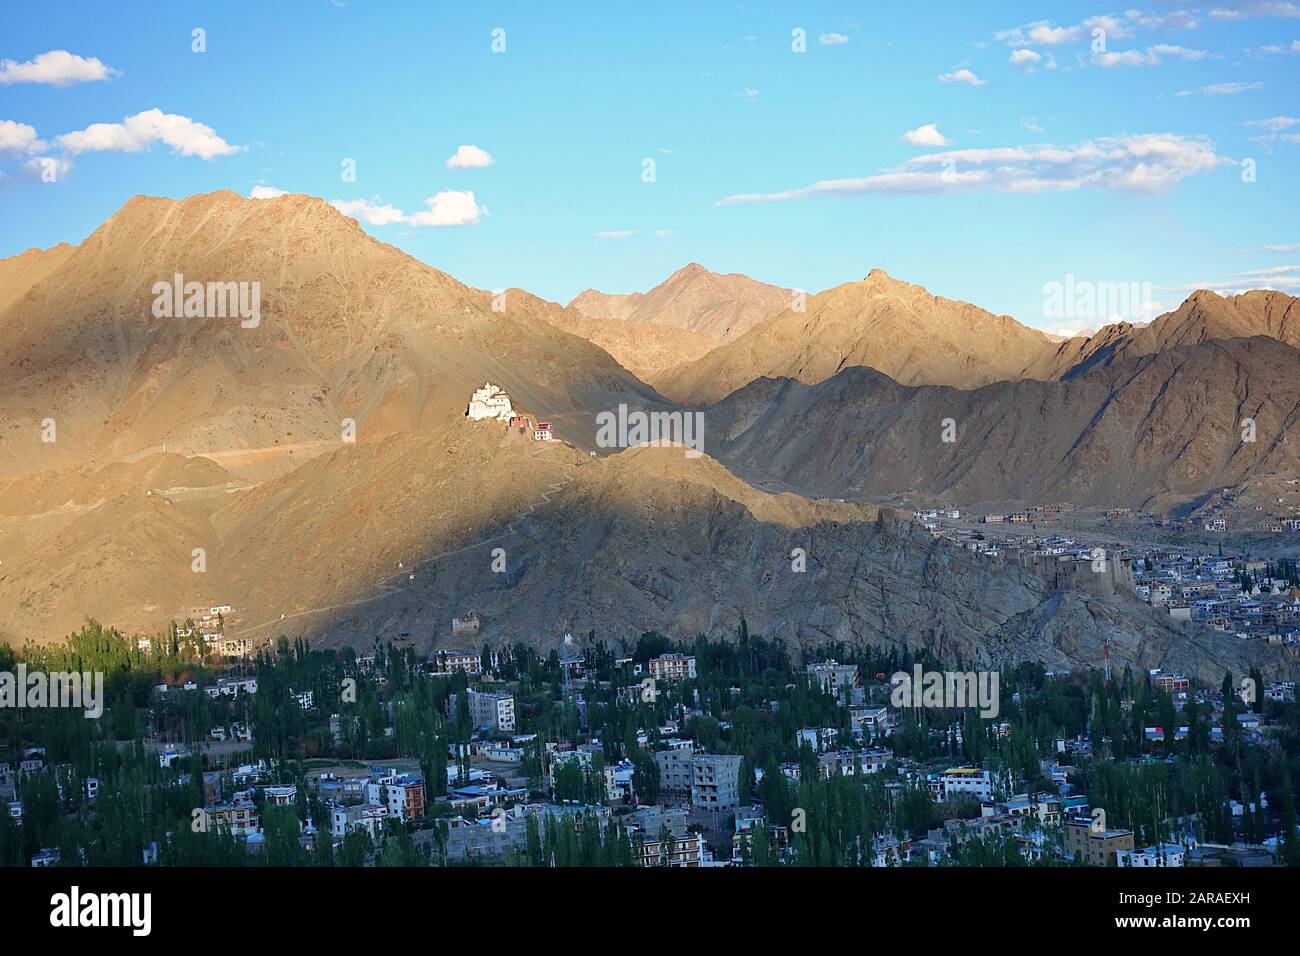 Les parties sud de Leh et les montagnes de l'Himalaya nu - vue de Shanti Stupa dans le district de Leh, Ladakh, dans le nord de l'Inde - 2019 Banque D'Images